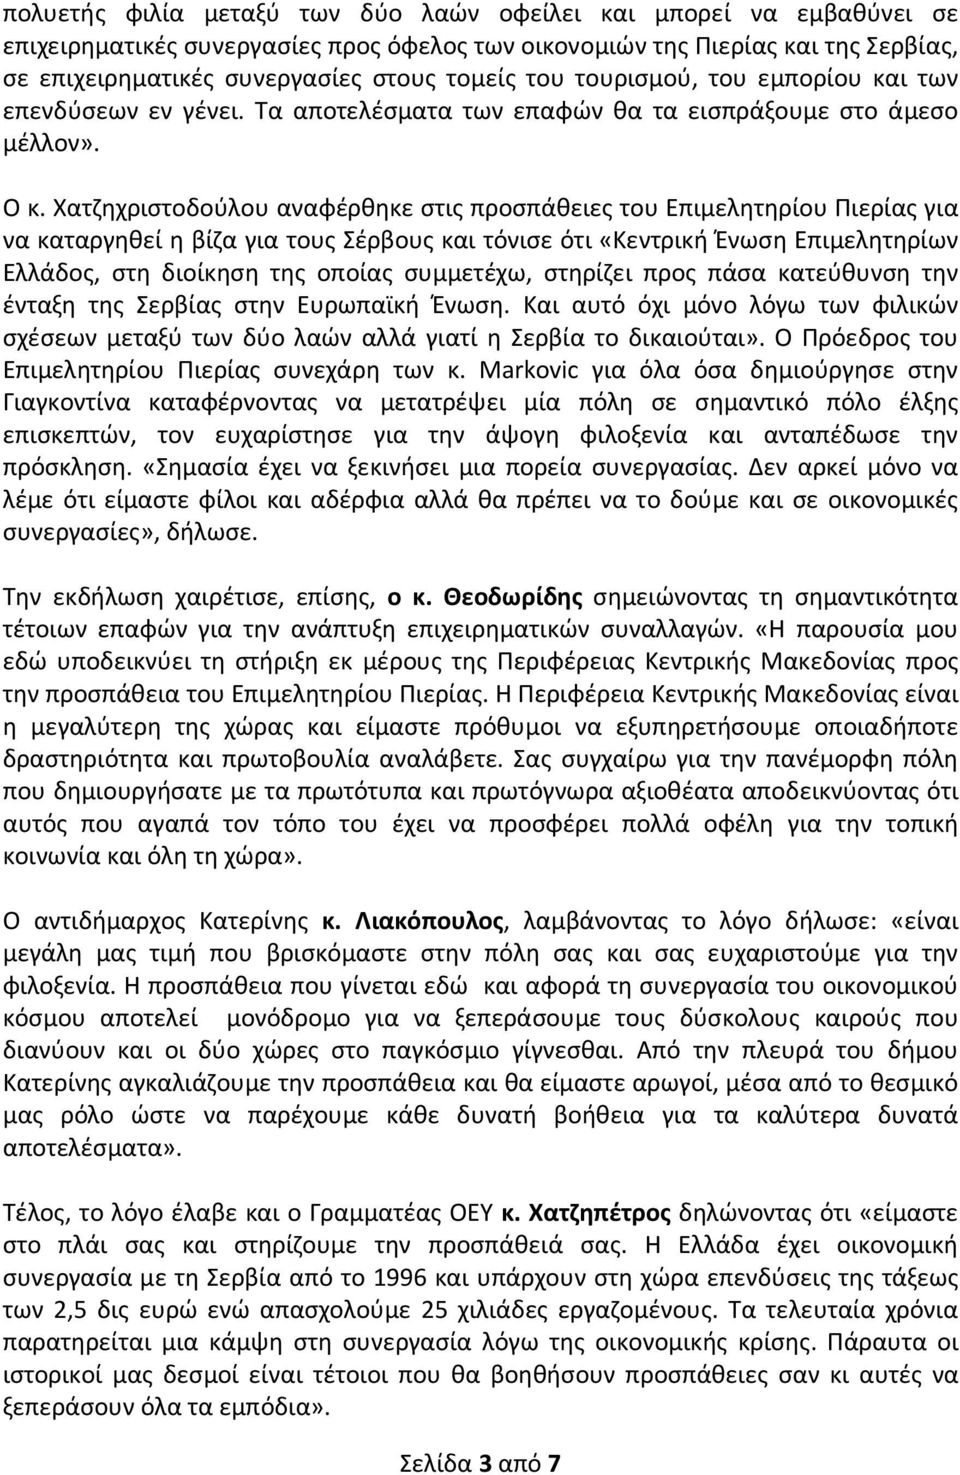 Χατζηχριστοδούλου αναφέρθηκε στις προσπάθειες του Επιμελητηρίου Πιερίας για να καταργηθεί η βίζα για τους Σέρβους και τόνισε ότι «Κεντρική Ένωση Επιμελητηρίων Ελλάδος, στη διοίκηση της οποίας